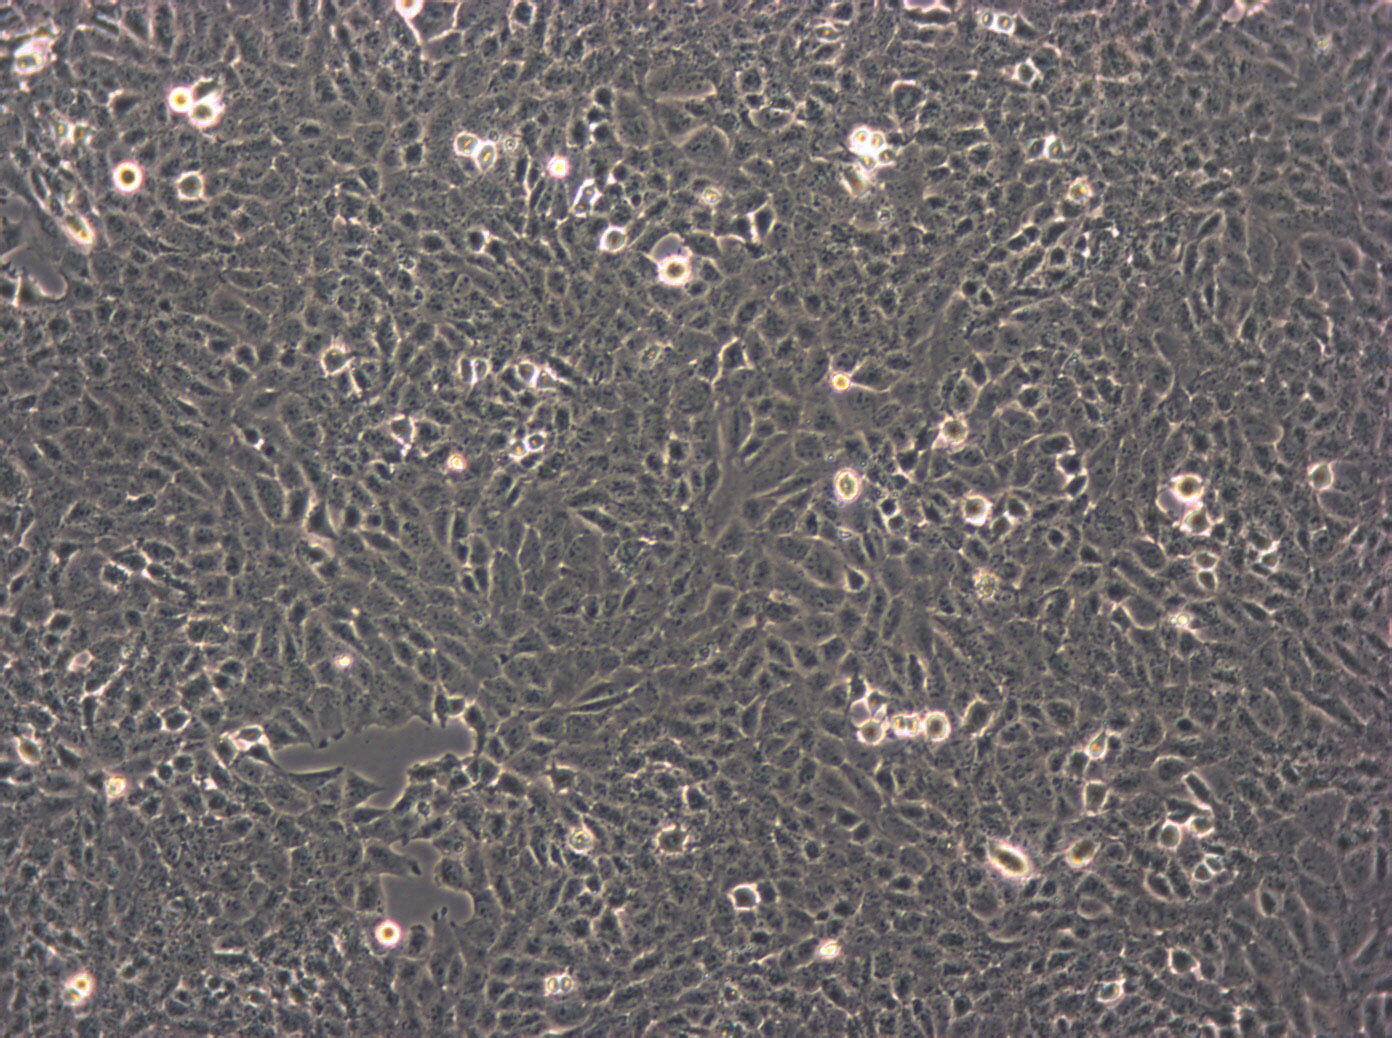 SNU-182 Cells|人肝癌需消化细胞系,SNU-182 Cells